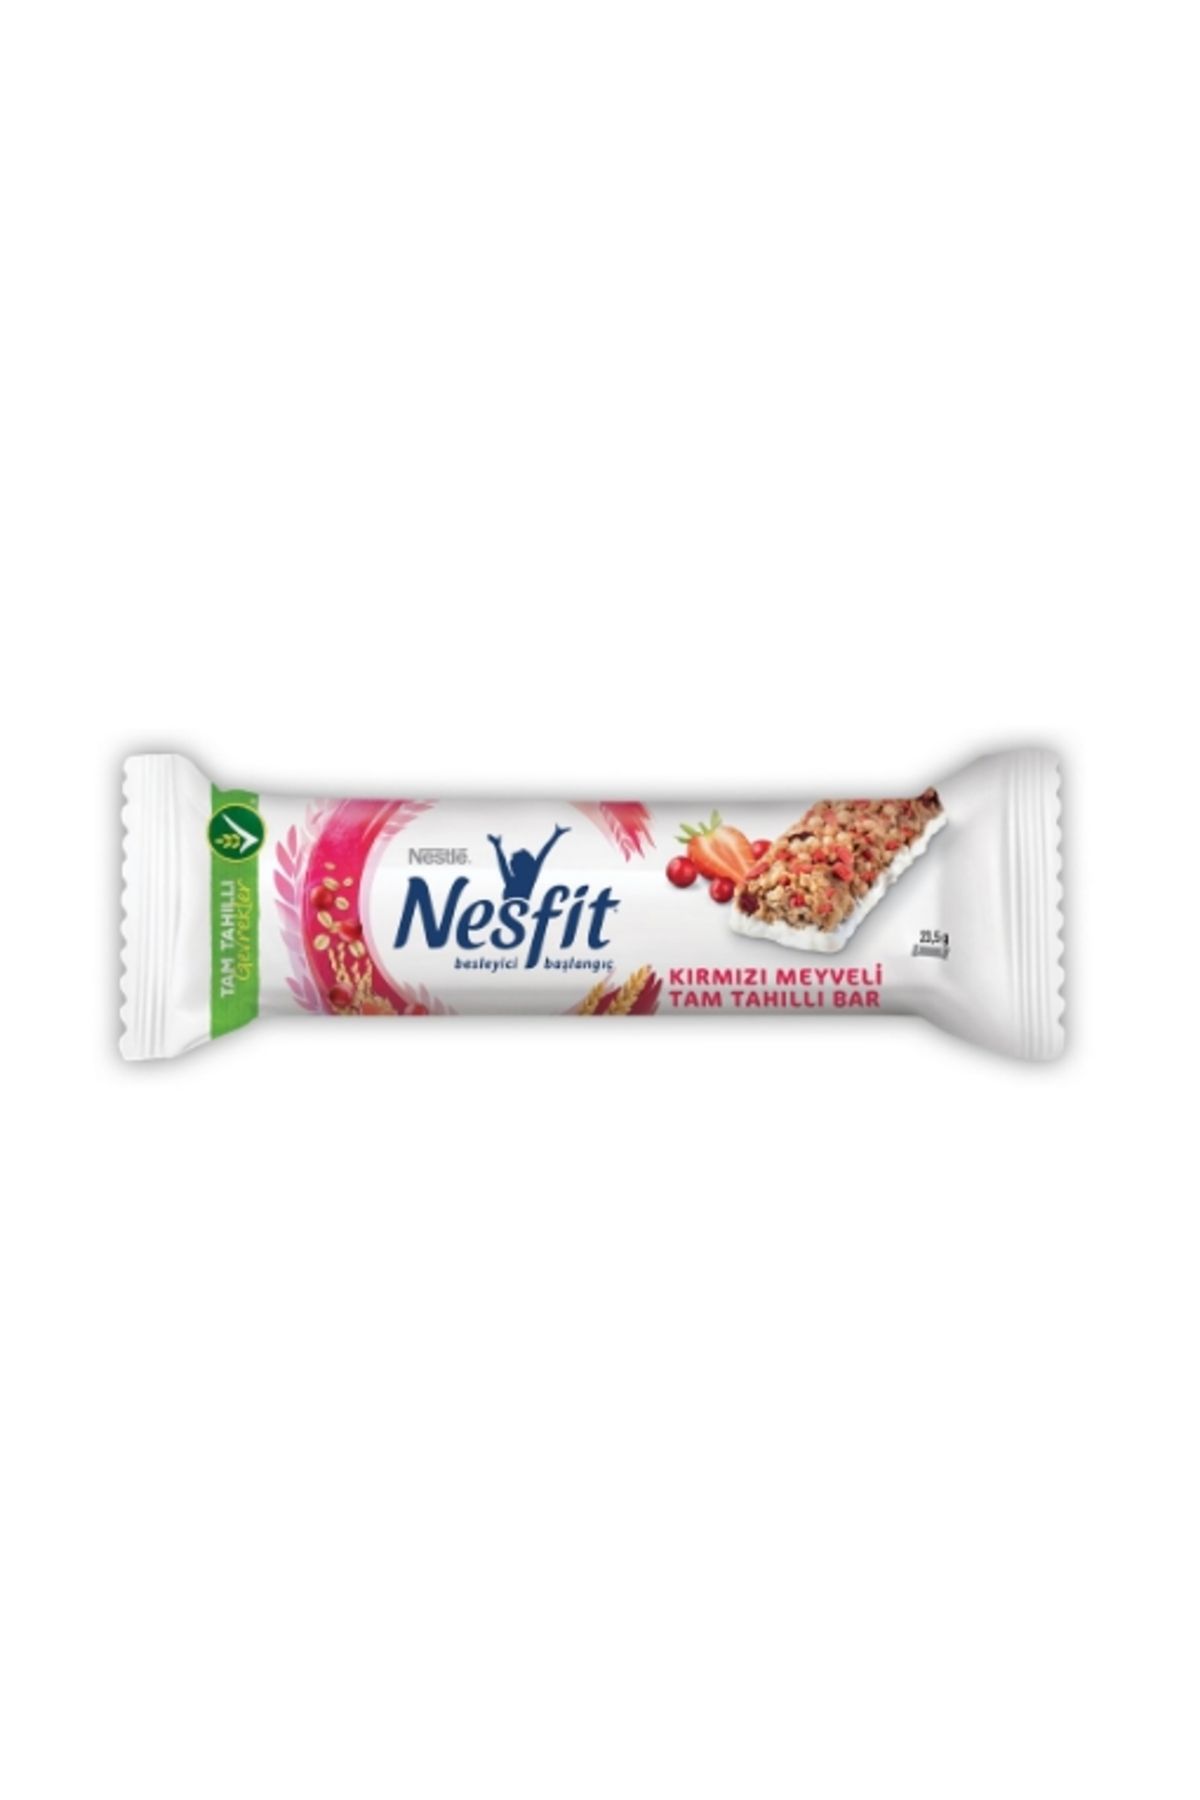 Nestle Kırmızı Meyveli Tam Tahıllı Bar 23,5 Gr. (24'lü)